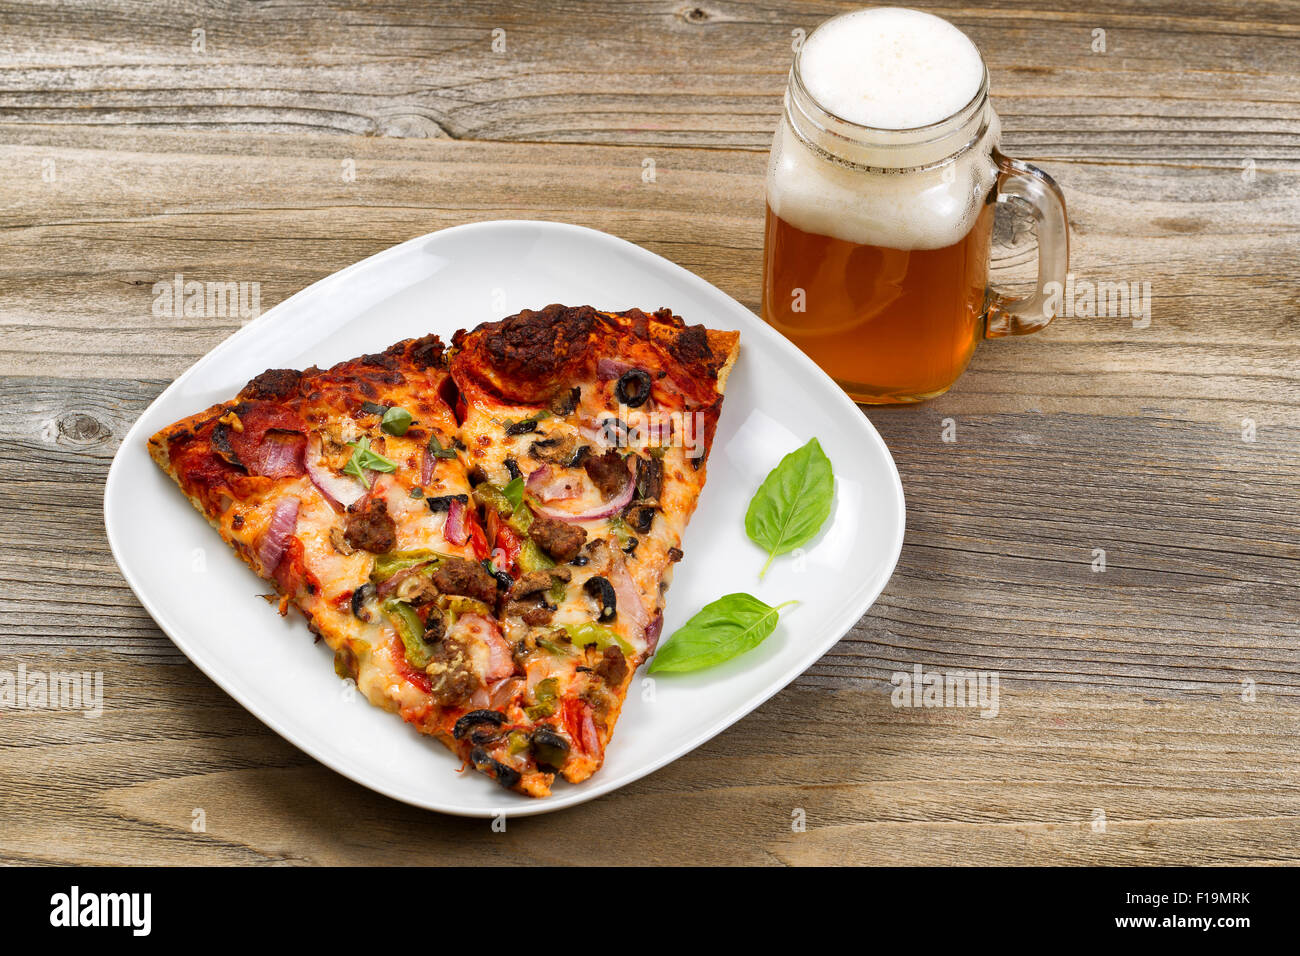 Due fette di pane appena sfornato la pizza in una piastra bianca con una pinta di giustamente si versa la birra impostazione su una tavola in legno rustico. Foto Stock